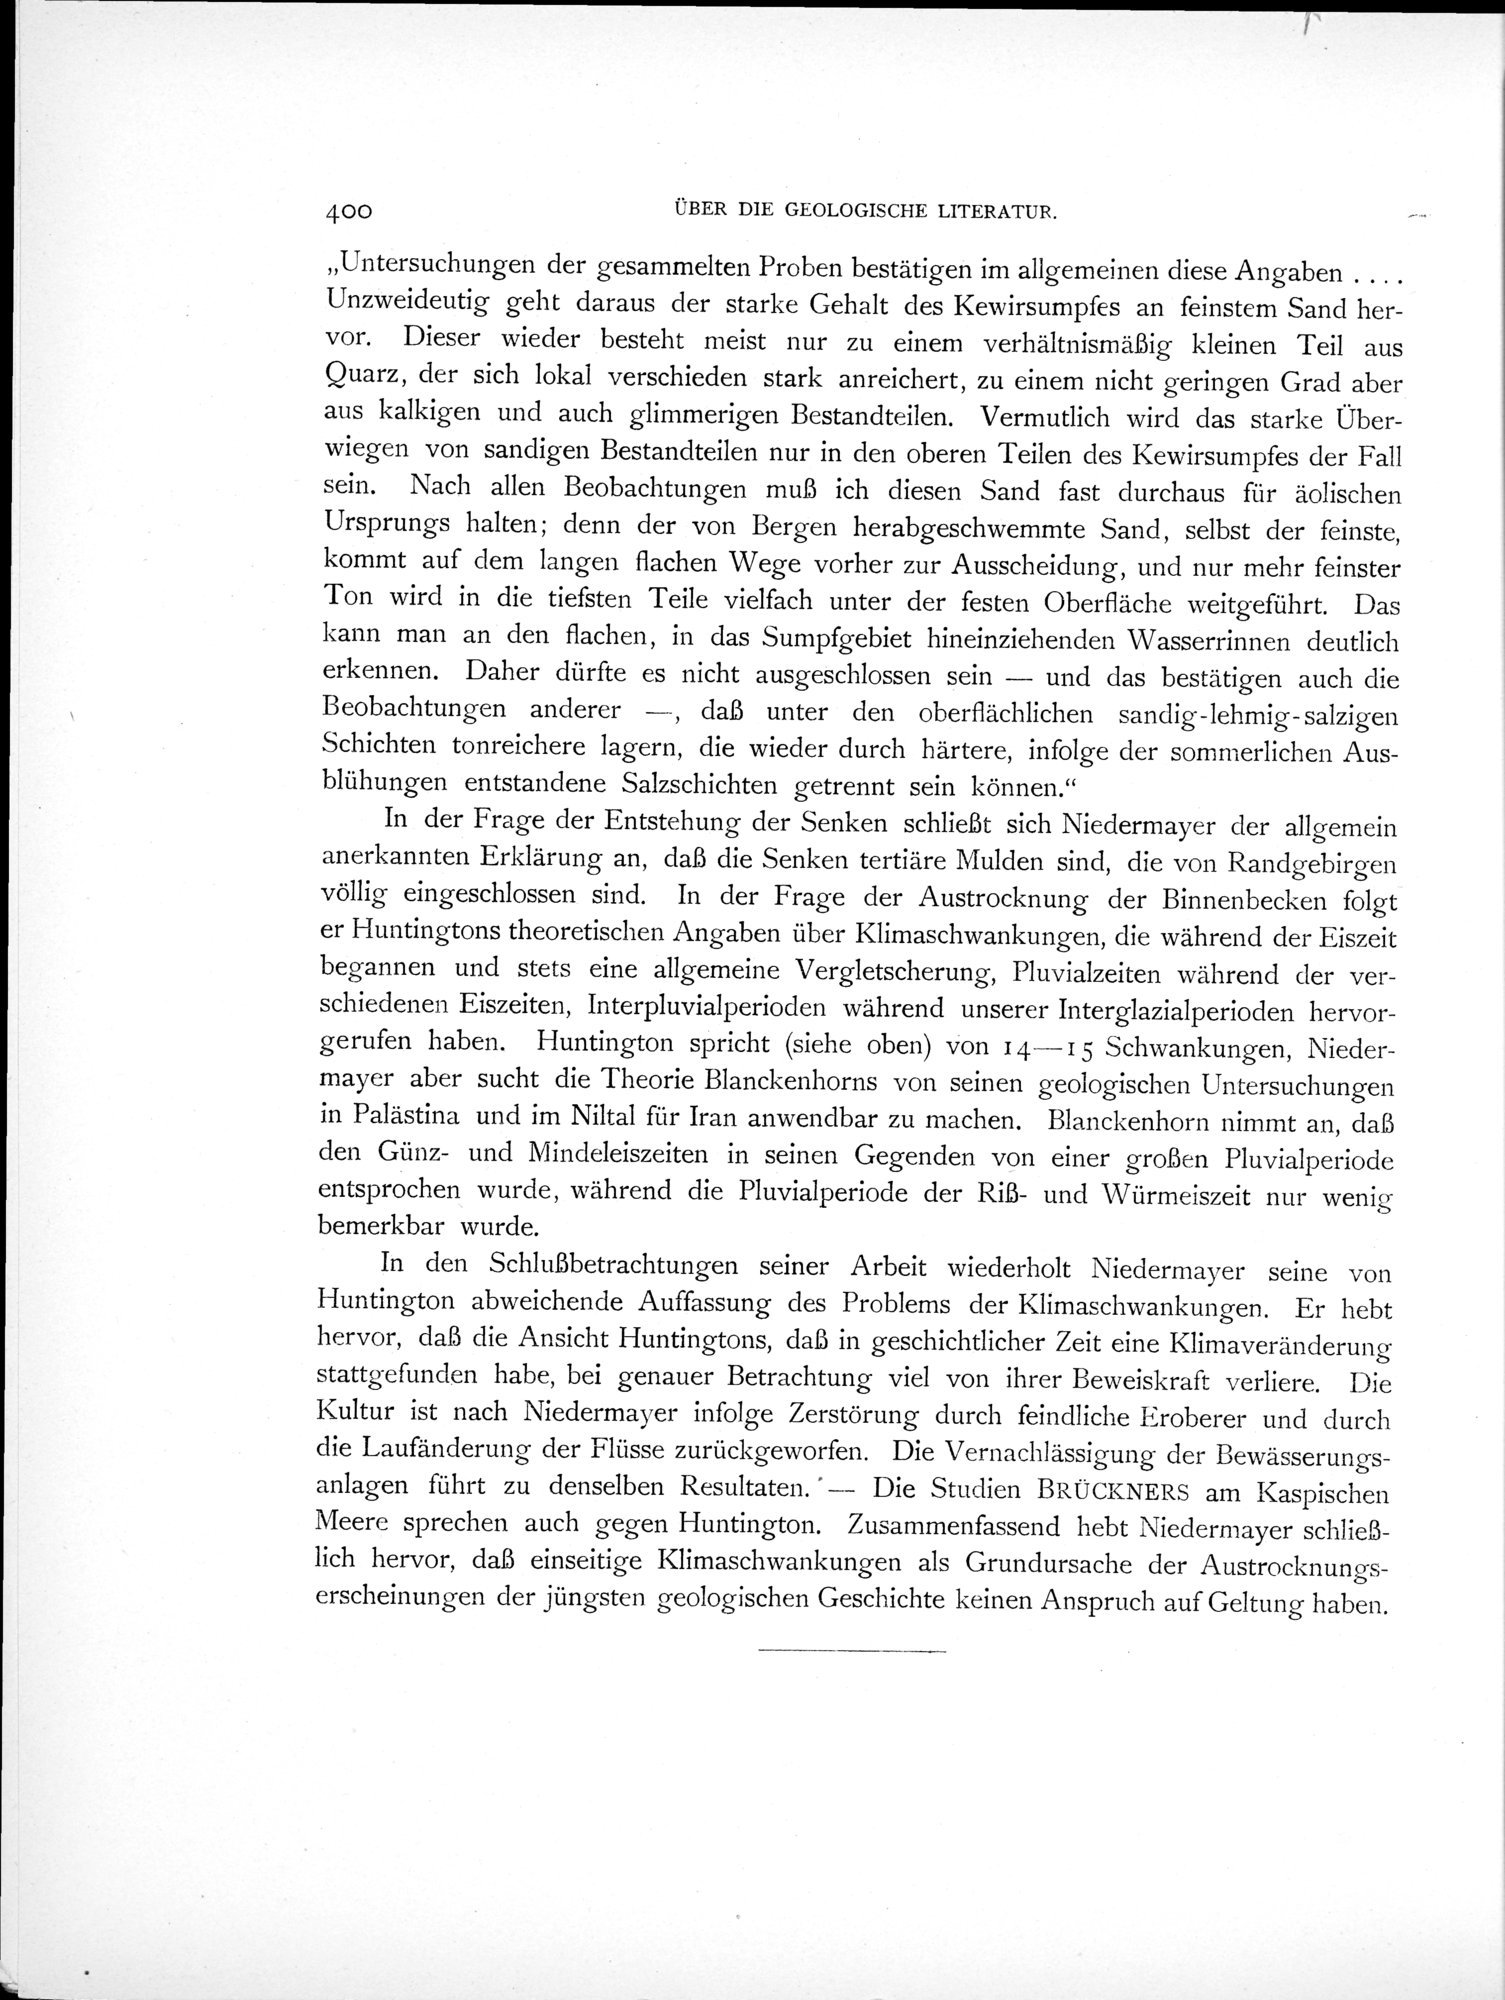 Eine Routenaufnahme durch Ostpersien : vol.2 / Page 470 (Grayscale High Resolution Image)